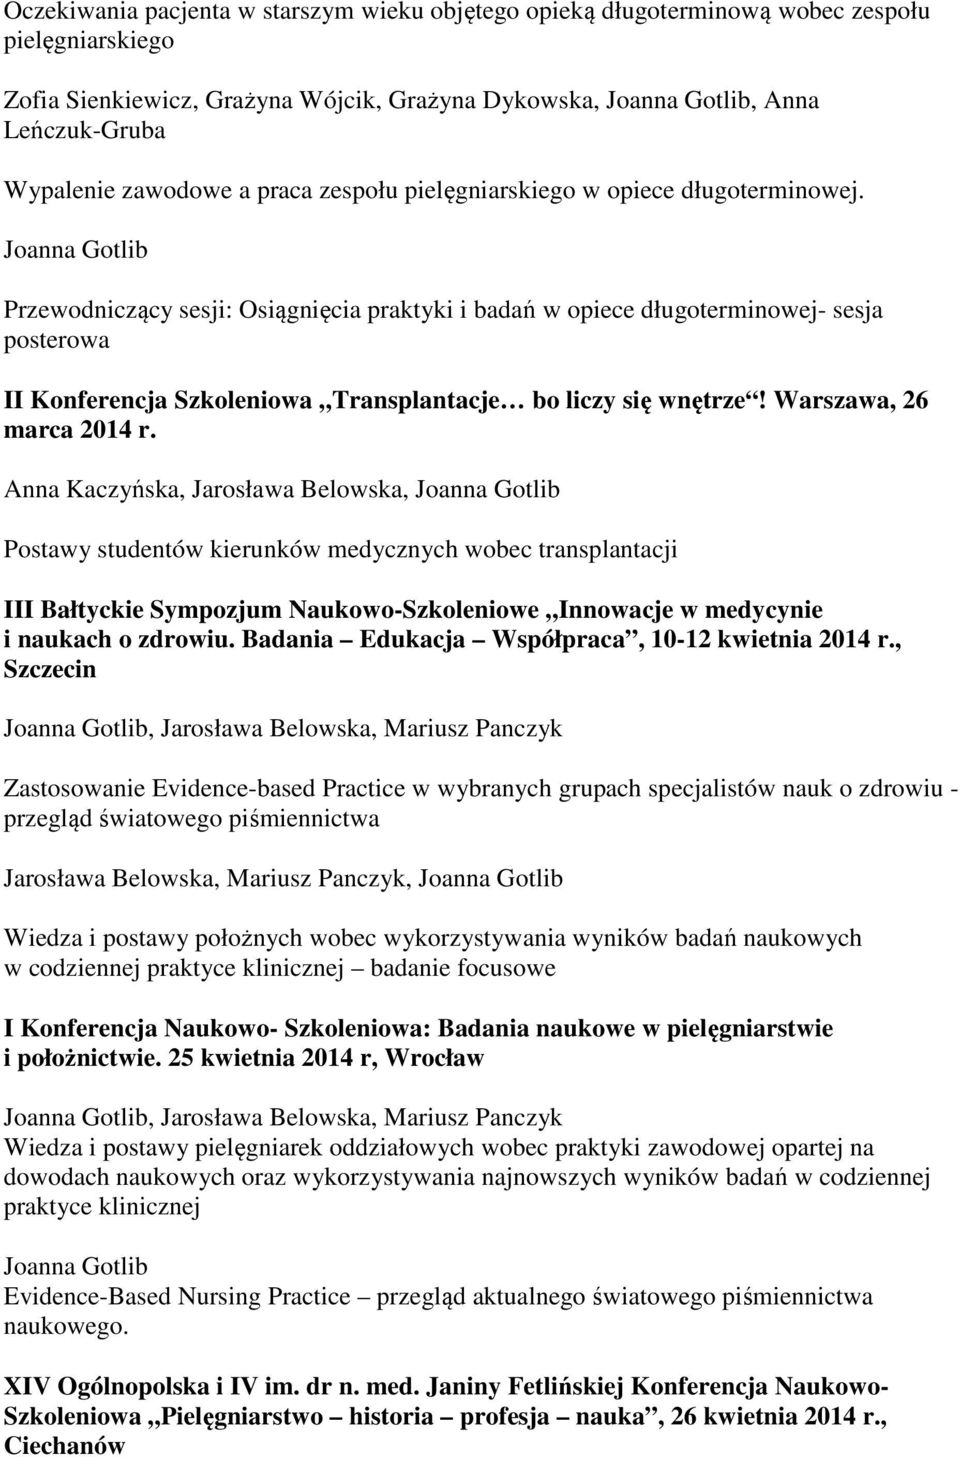 Przewodniczący sesji: Osiągnięcia praktyki i badań w opiece długoterminowej- sesja posterowa II Konferencja Szkoleniowa Transplantacje bo liczy się wnętrze! Warszawa, 26 marca 2014 r.